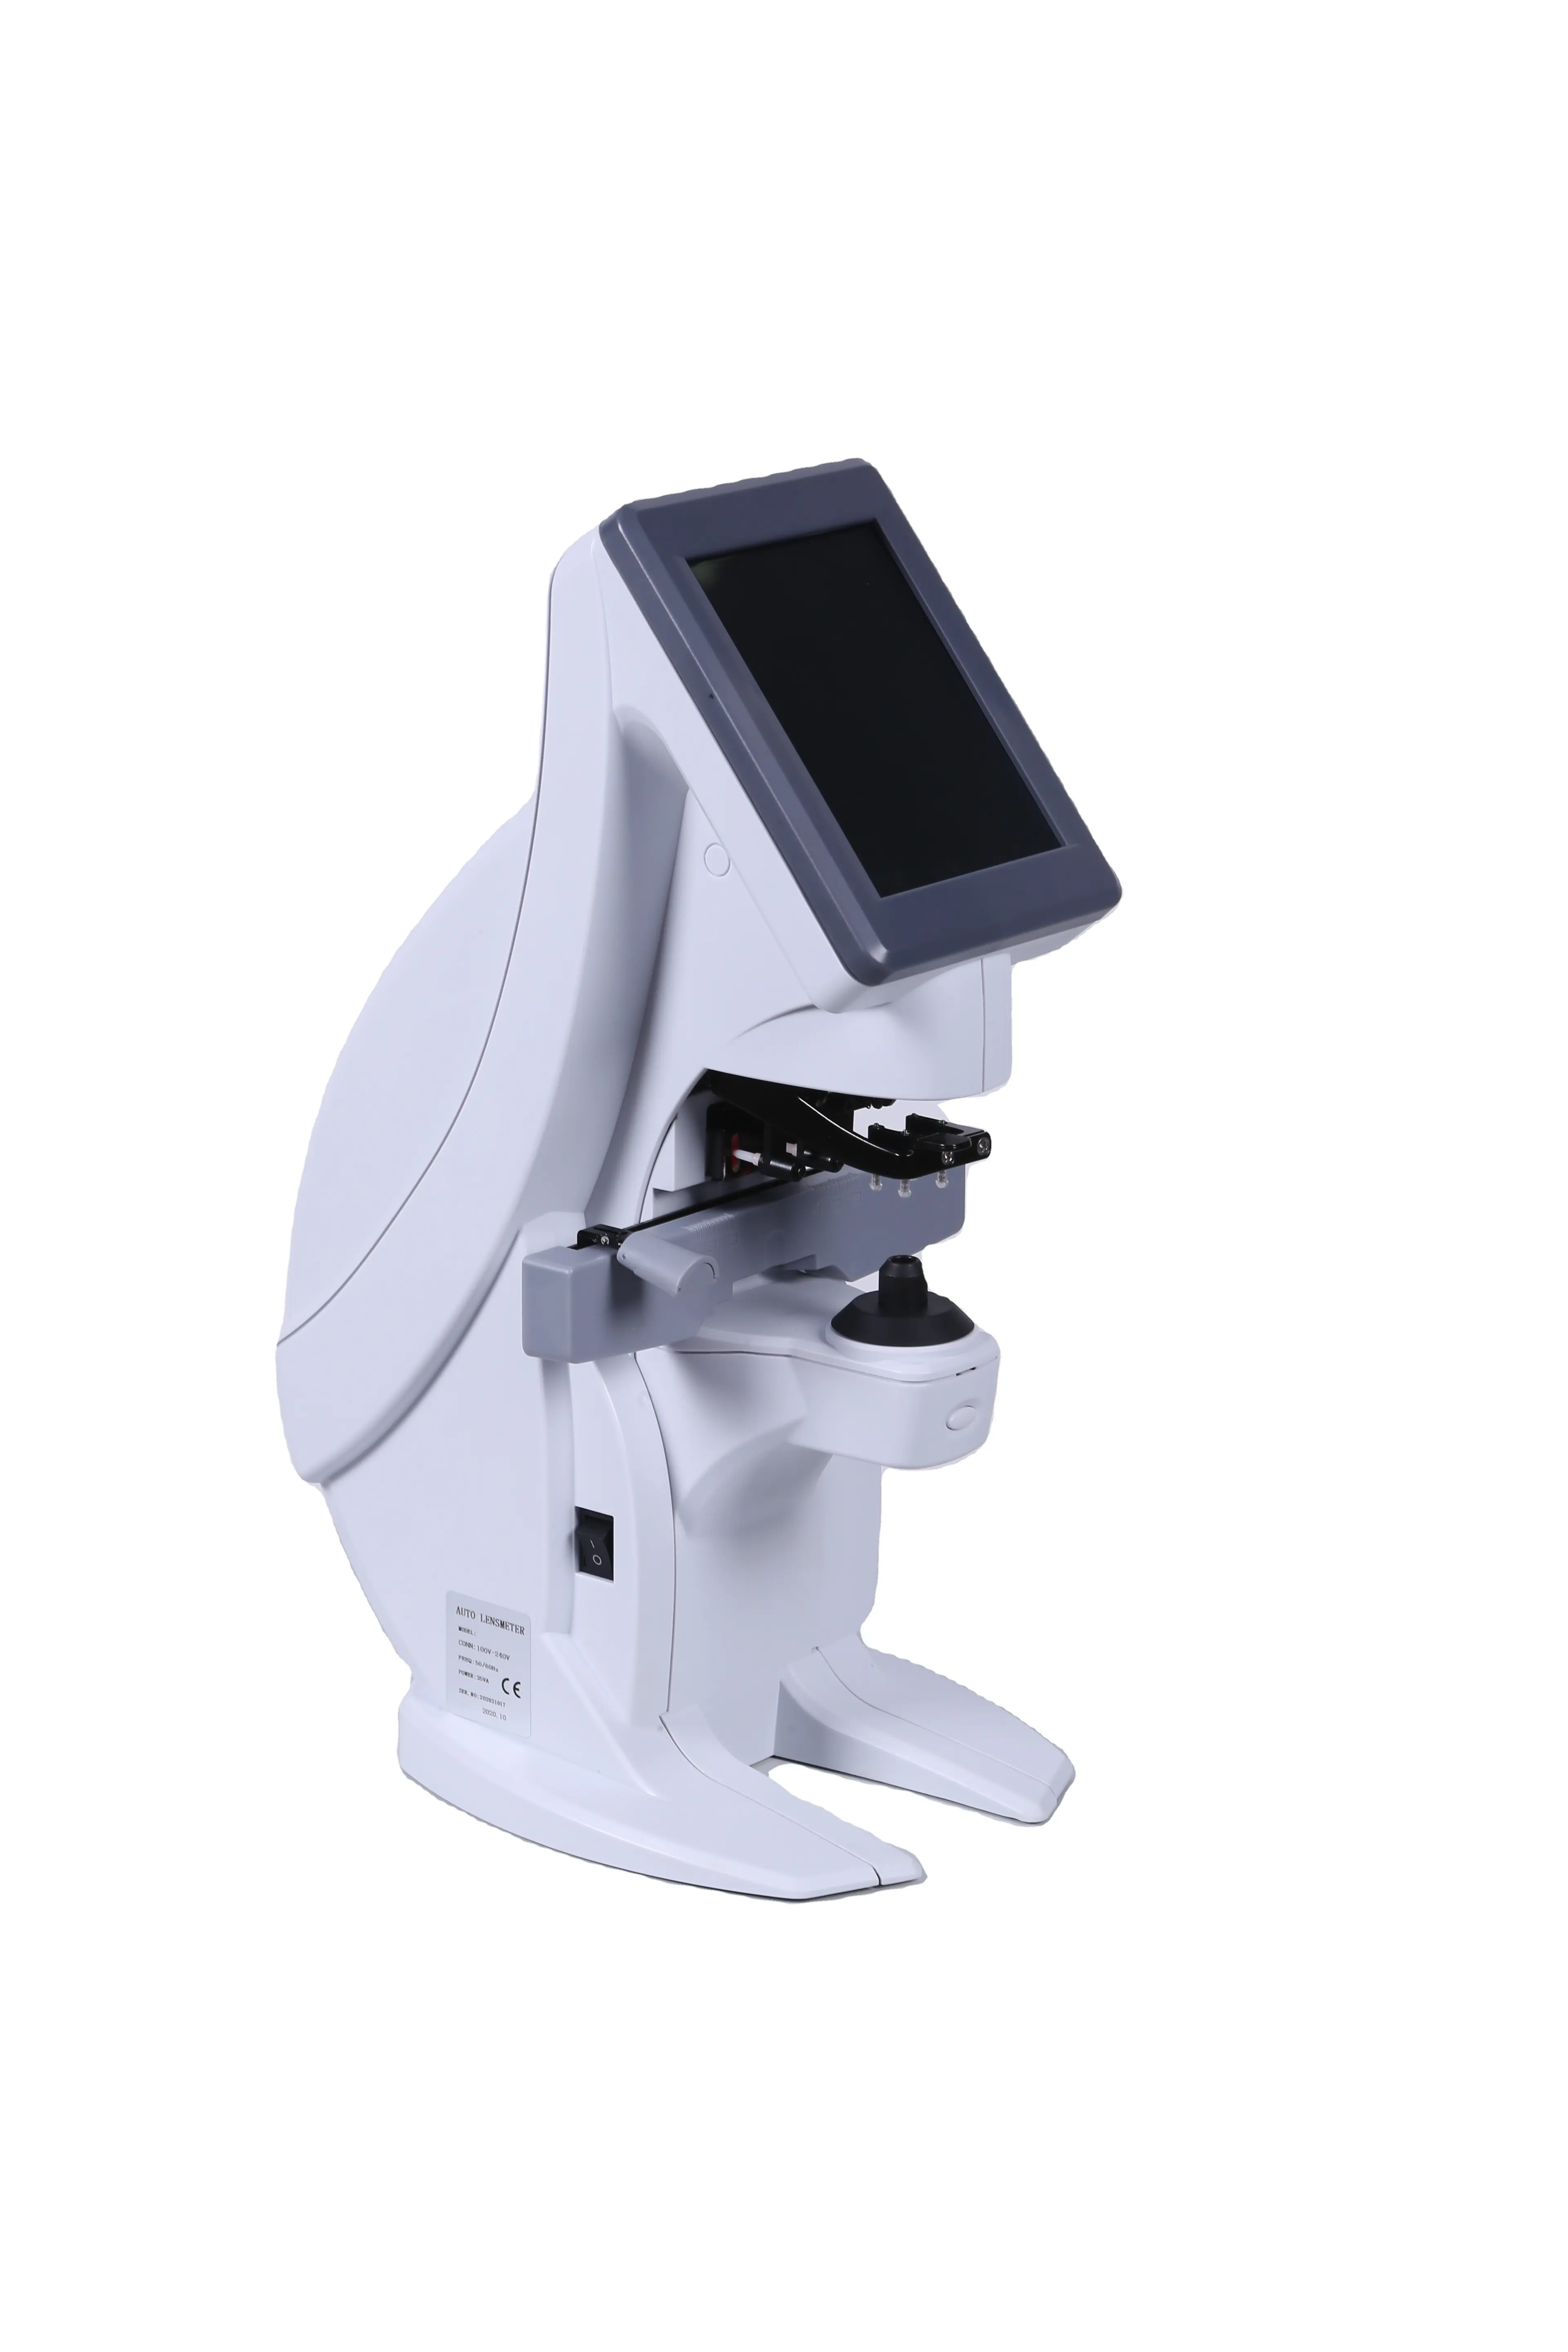 جهاز قياس العدسات الضوئية عالي الجودة LM-300 جهاز قياس العدسات الضوئية الرقمي أداة قياس العدسات الضوئية التلقائية لمتاجر التنظير